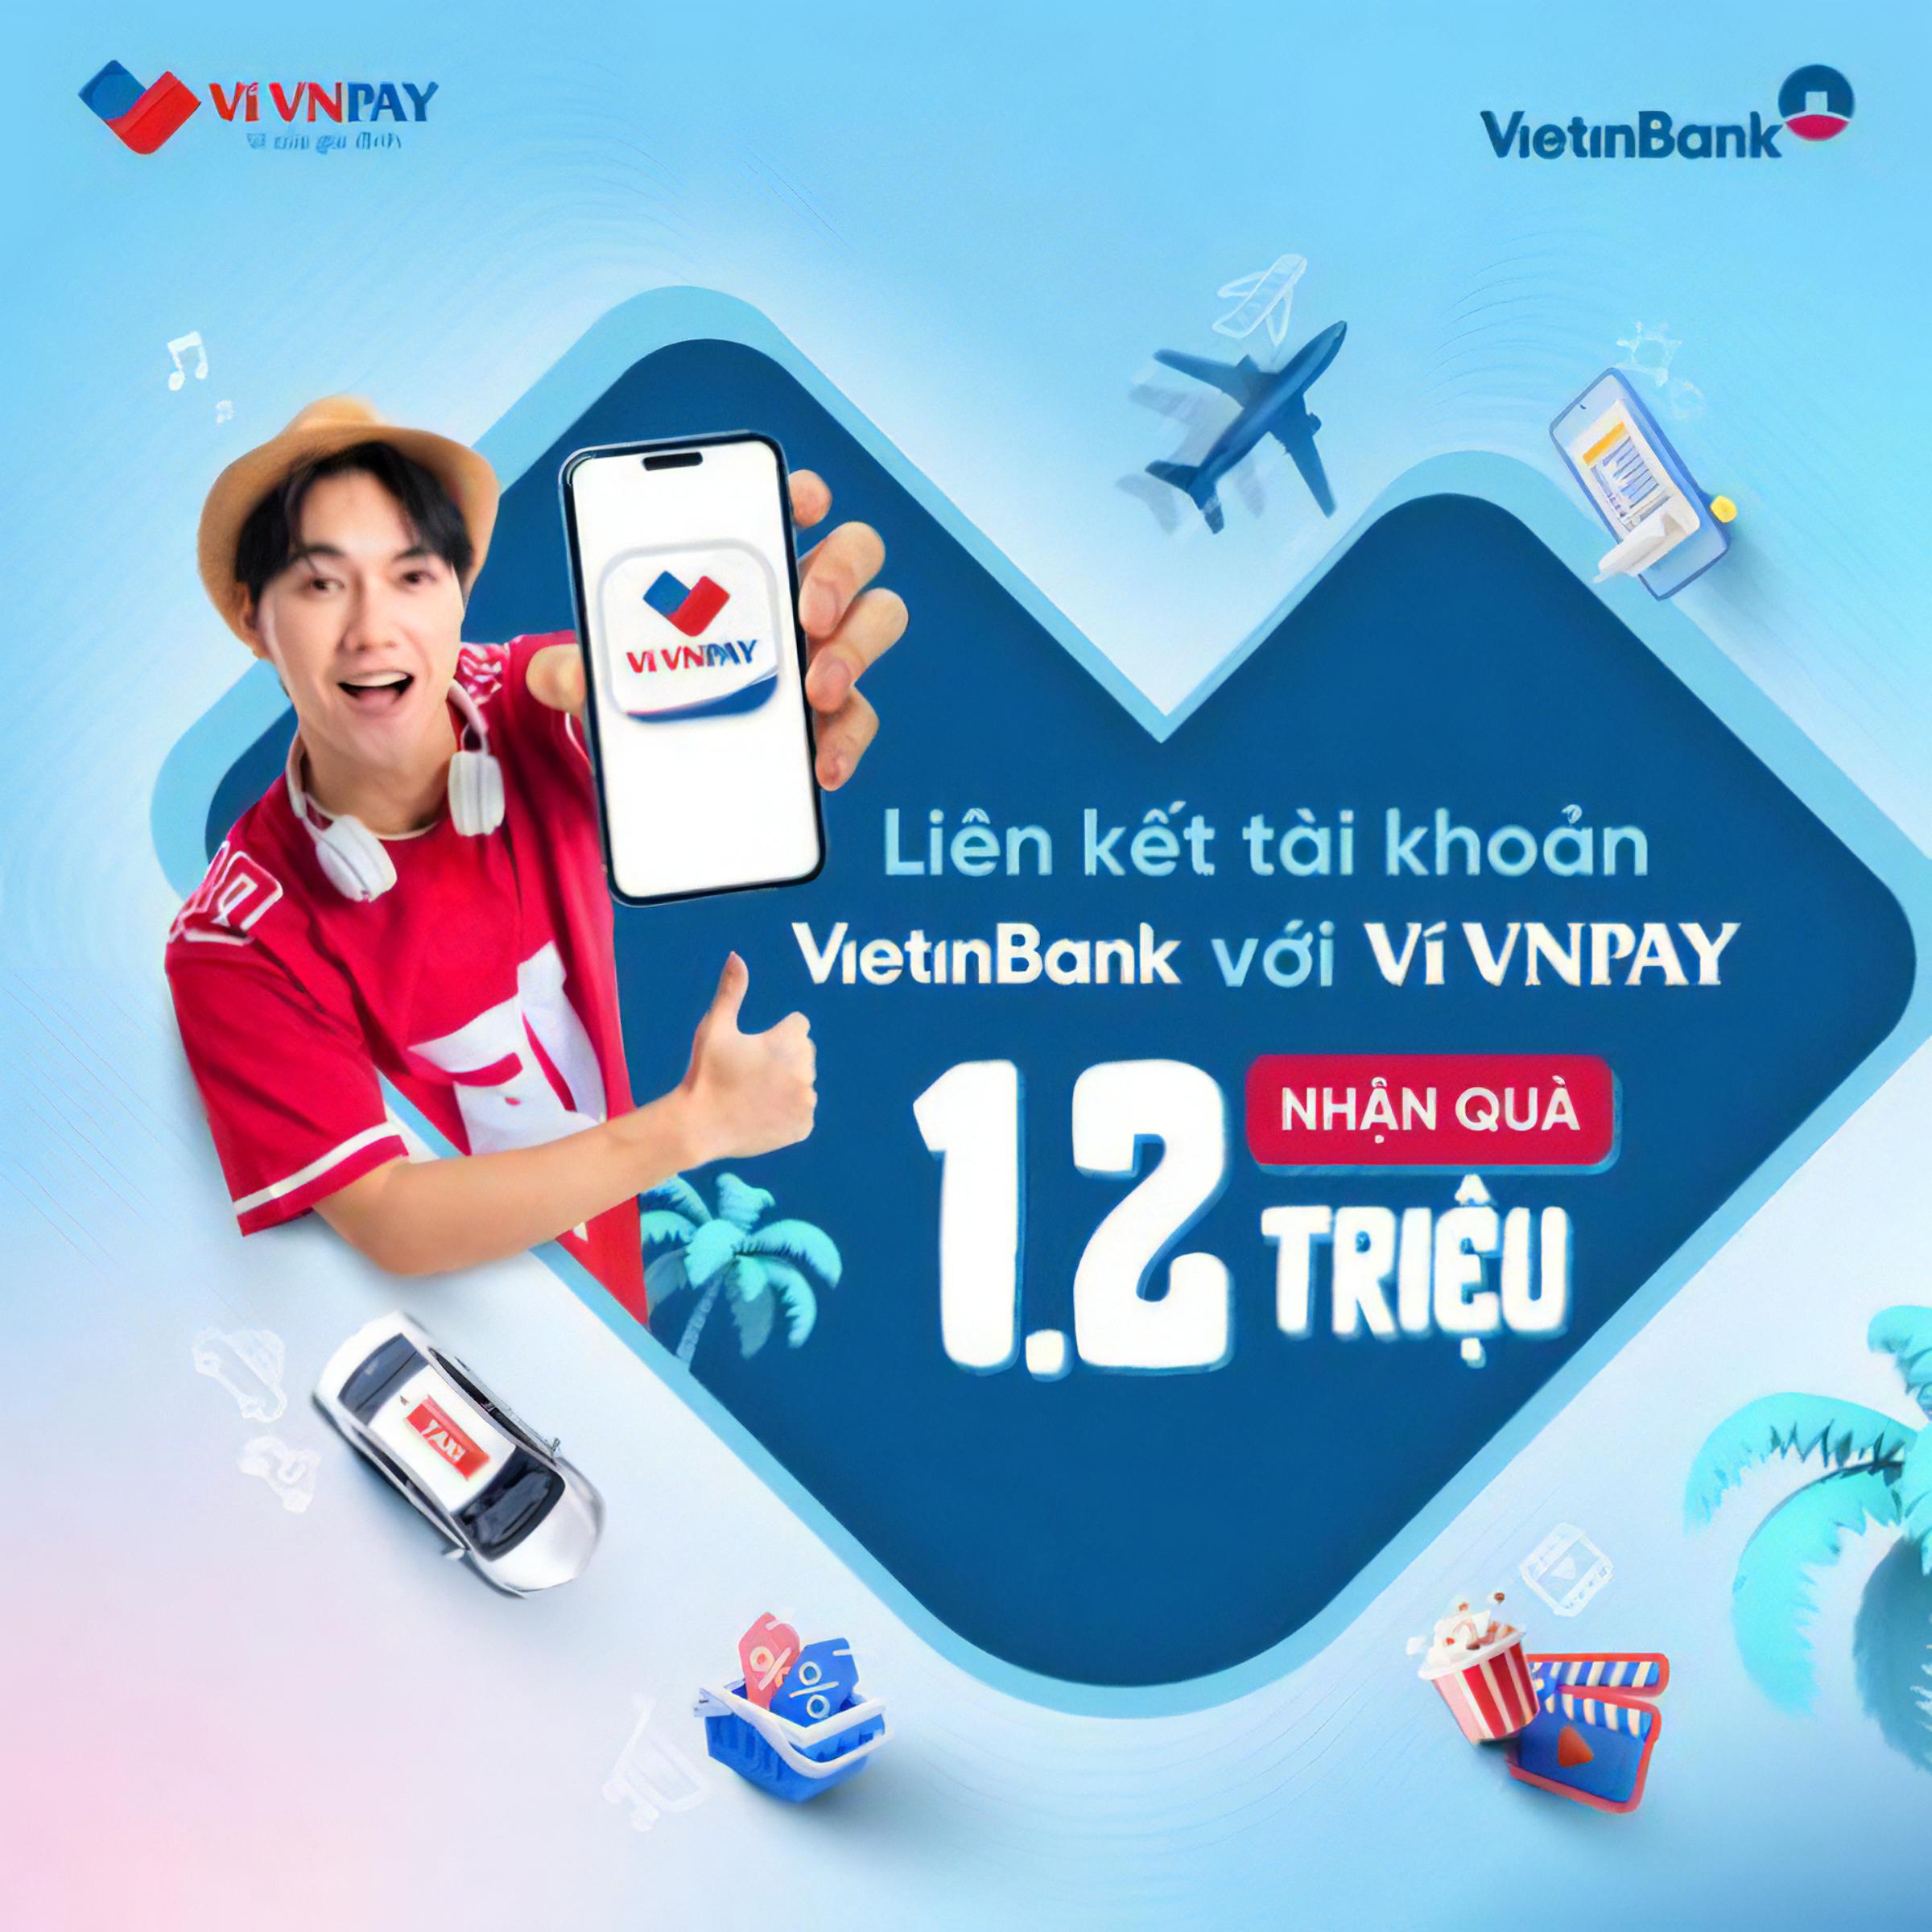 Nhận tới 1,2 triệu đồng khi liên kết tài khoản VietinBank với Ví VNPAY